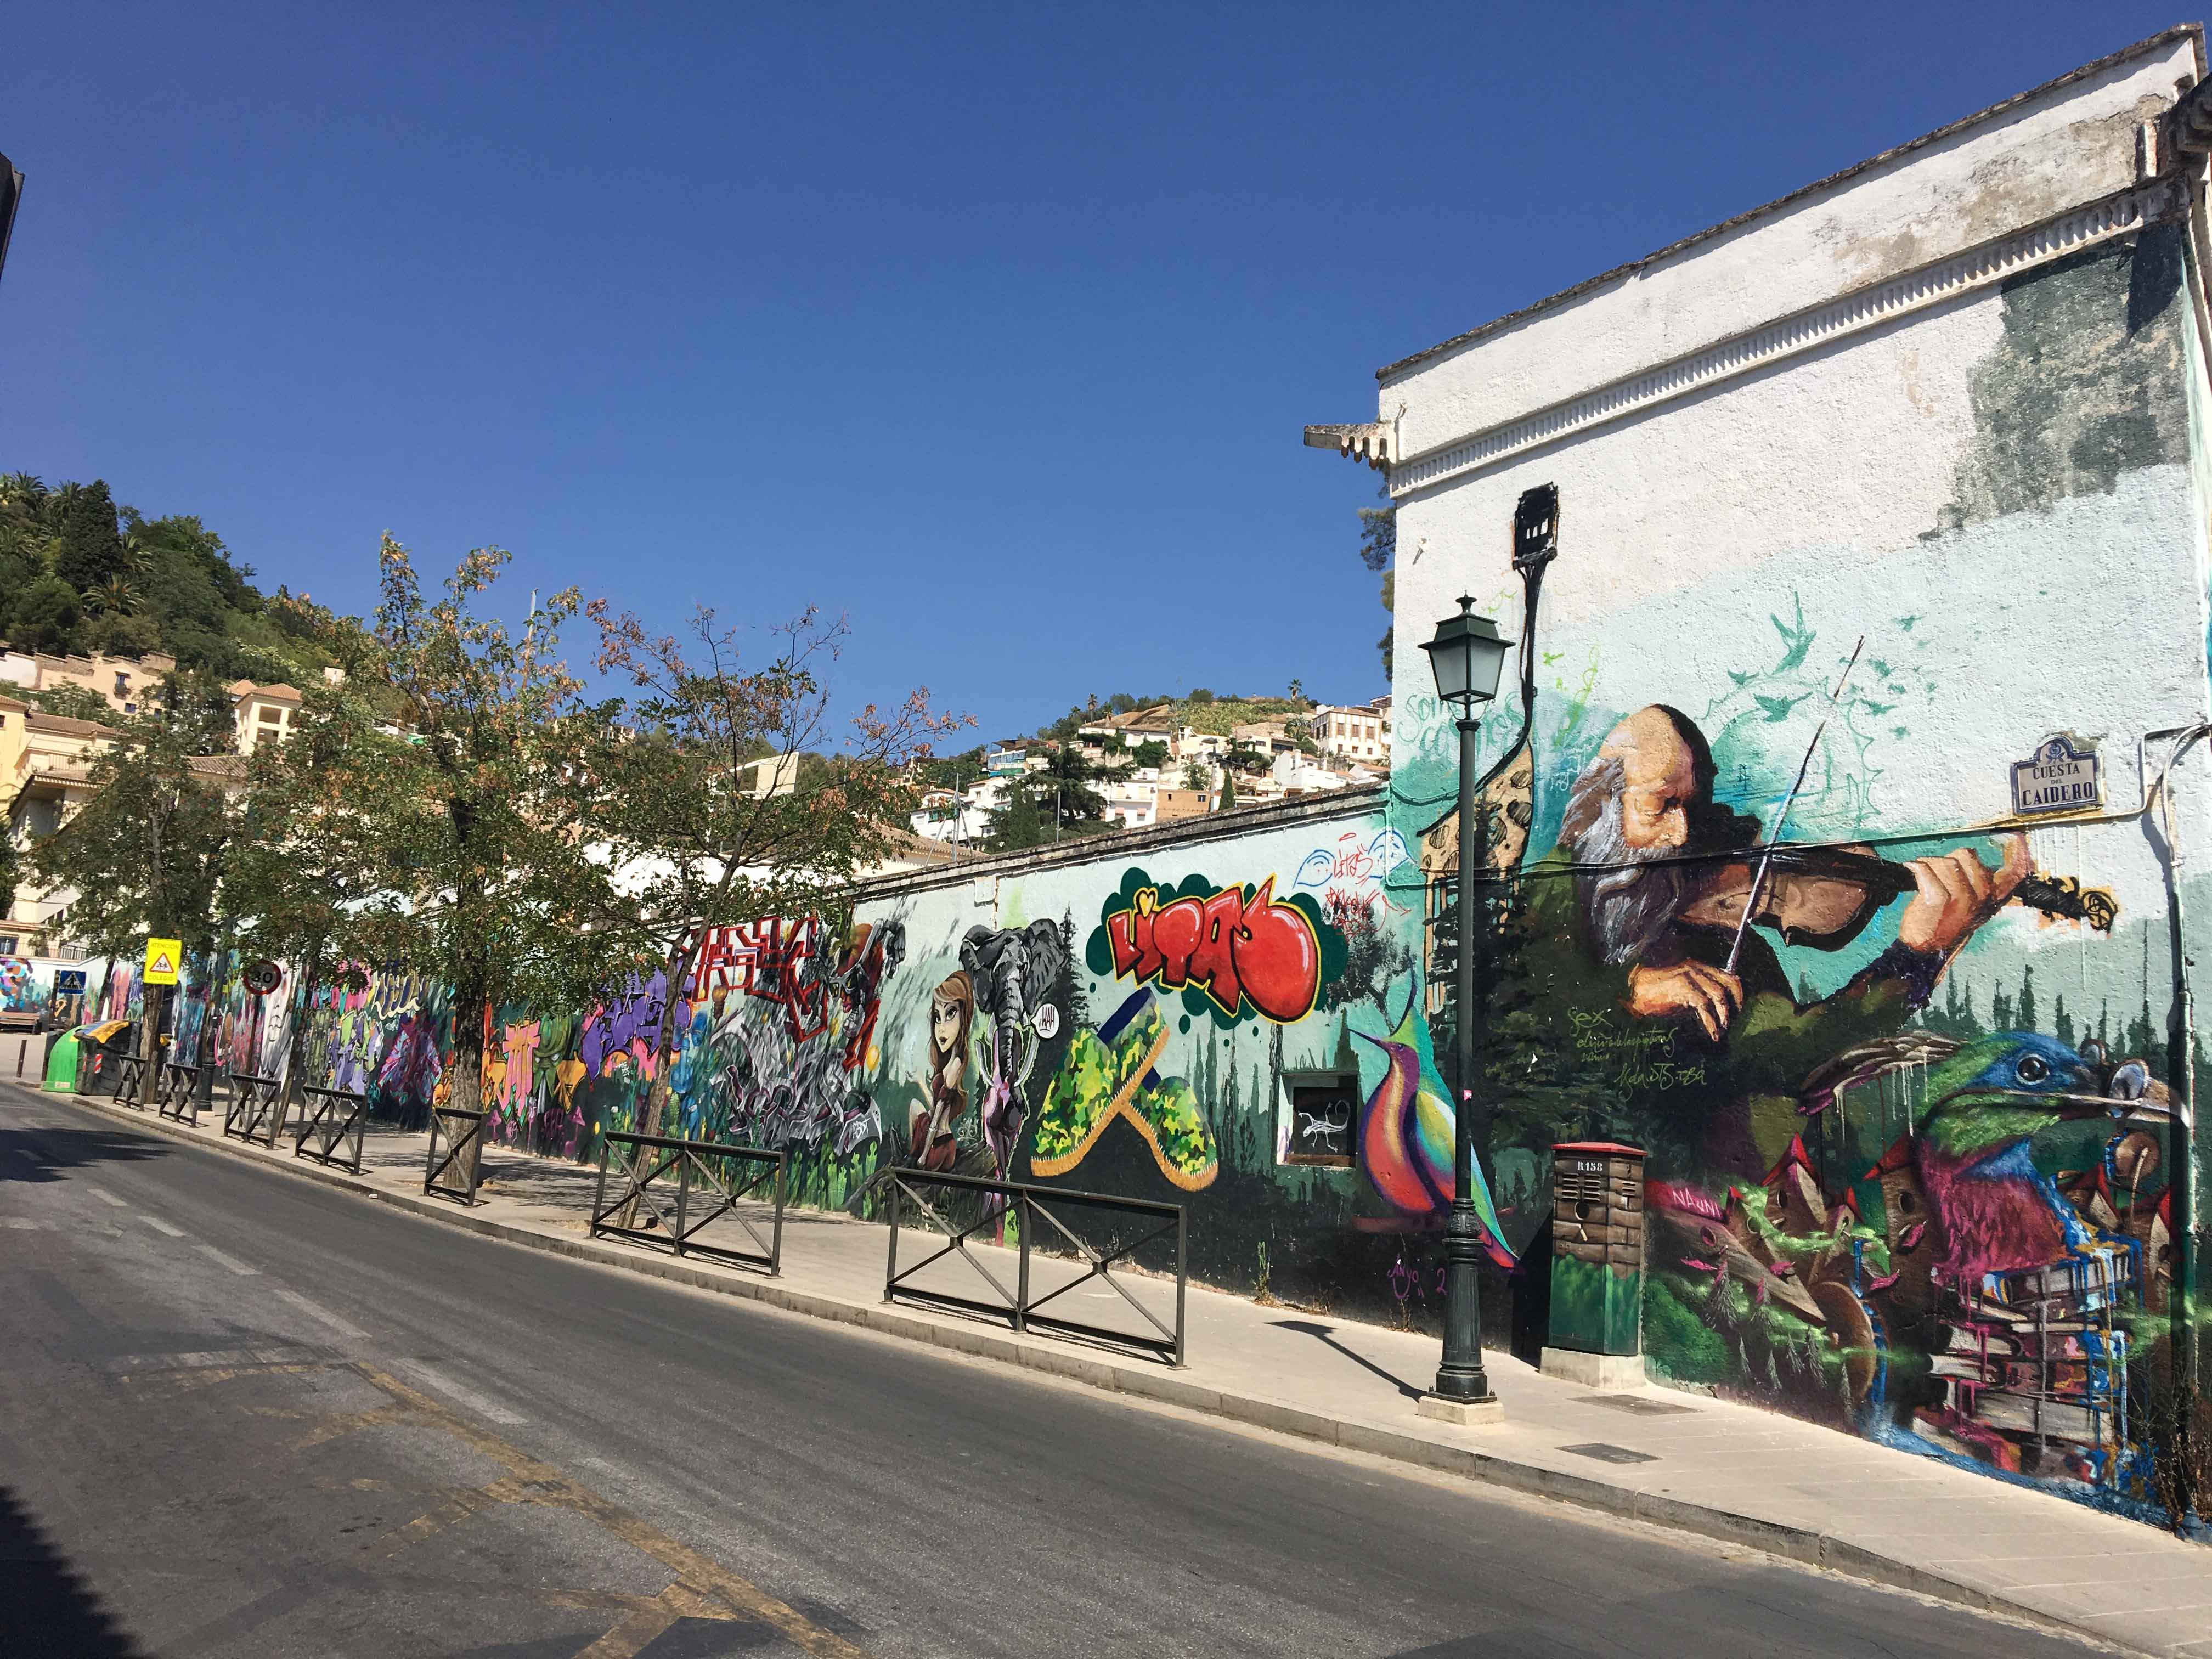 lange Wand mit Murals u.a. von El Niño de las Pinturas, ein Geiger ist zu sehen